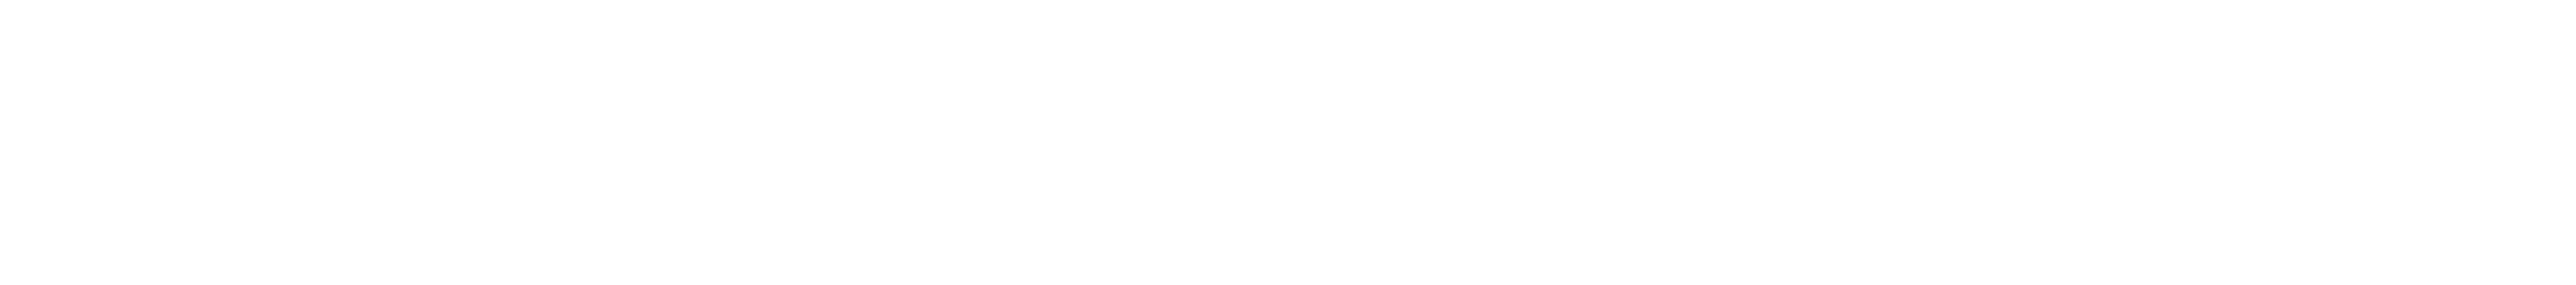 Emploi Ontario